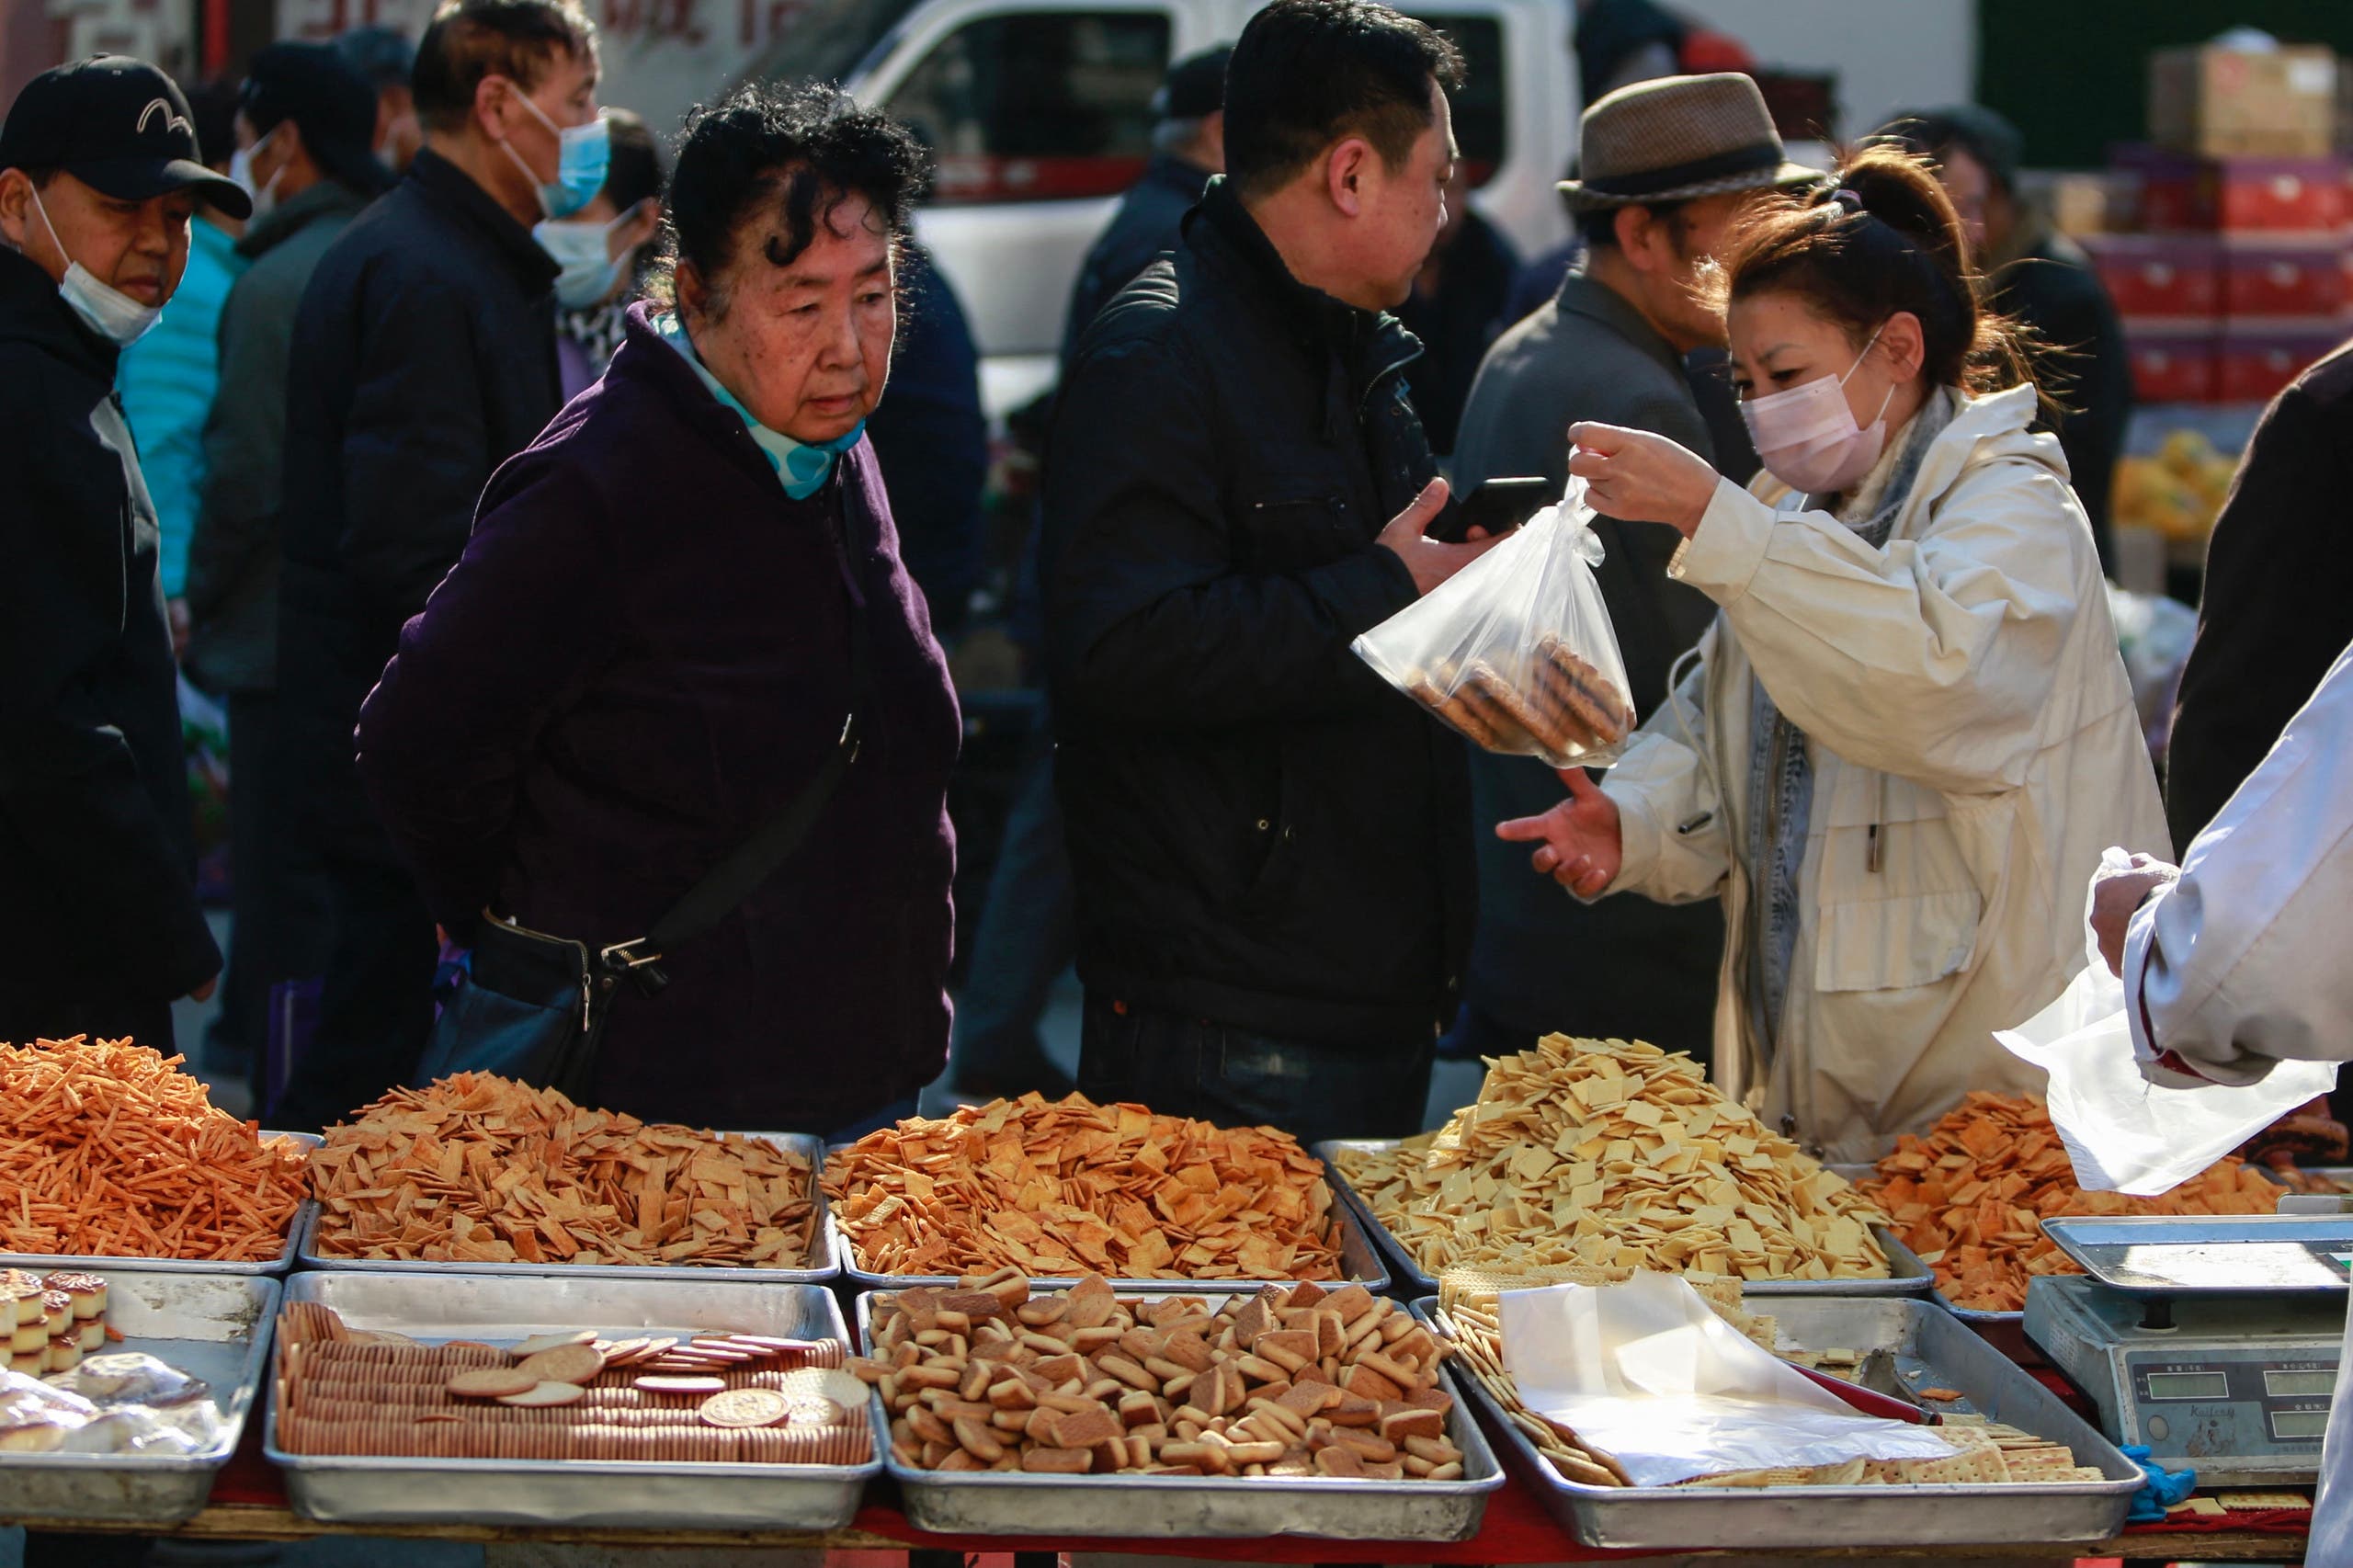 سيدة تشتري المأكولات من سوق في مدينة ليوانينغ الصينية (تعبيرية*